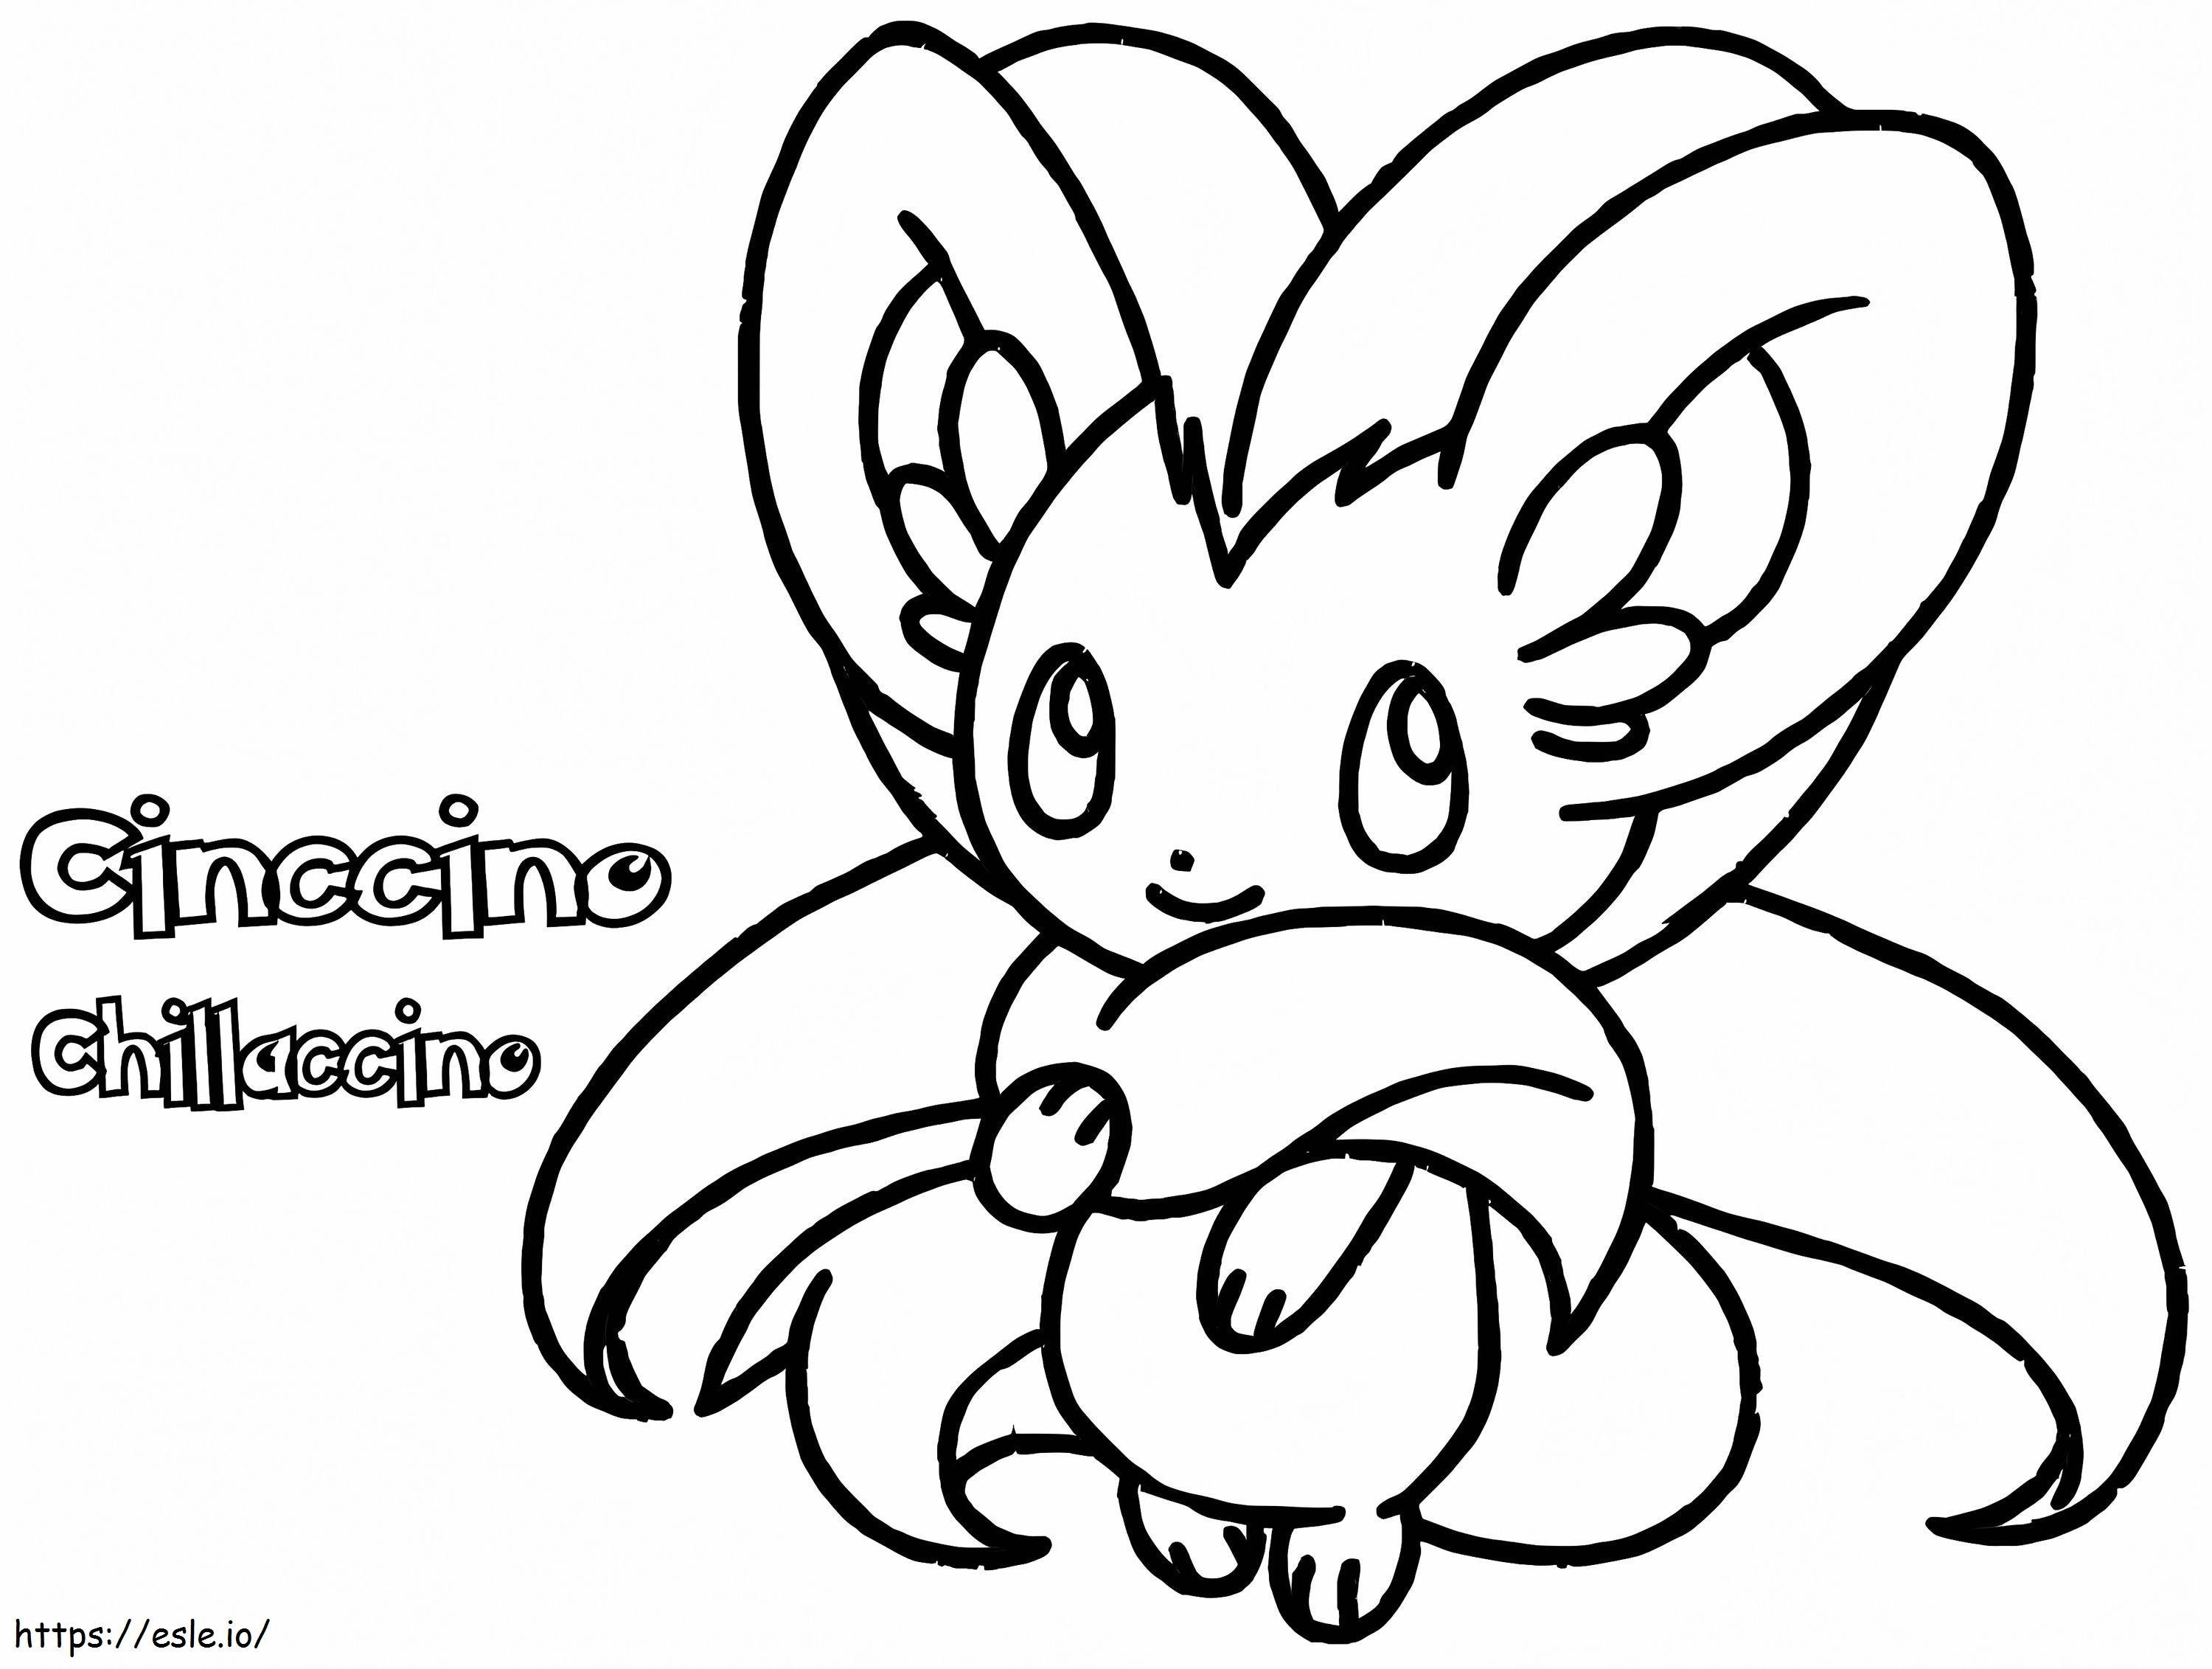 Cute Cinccino coloring page